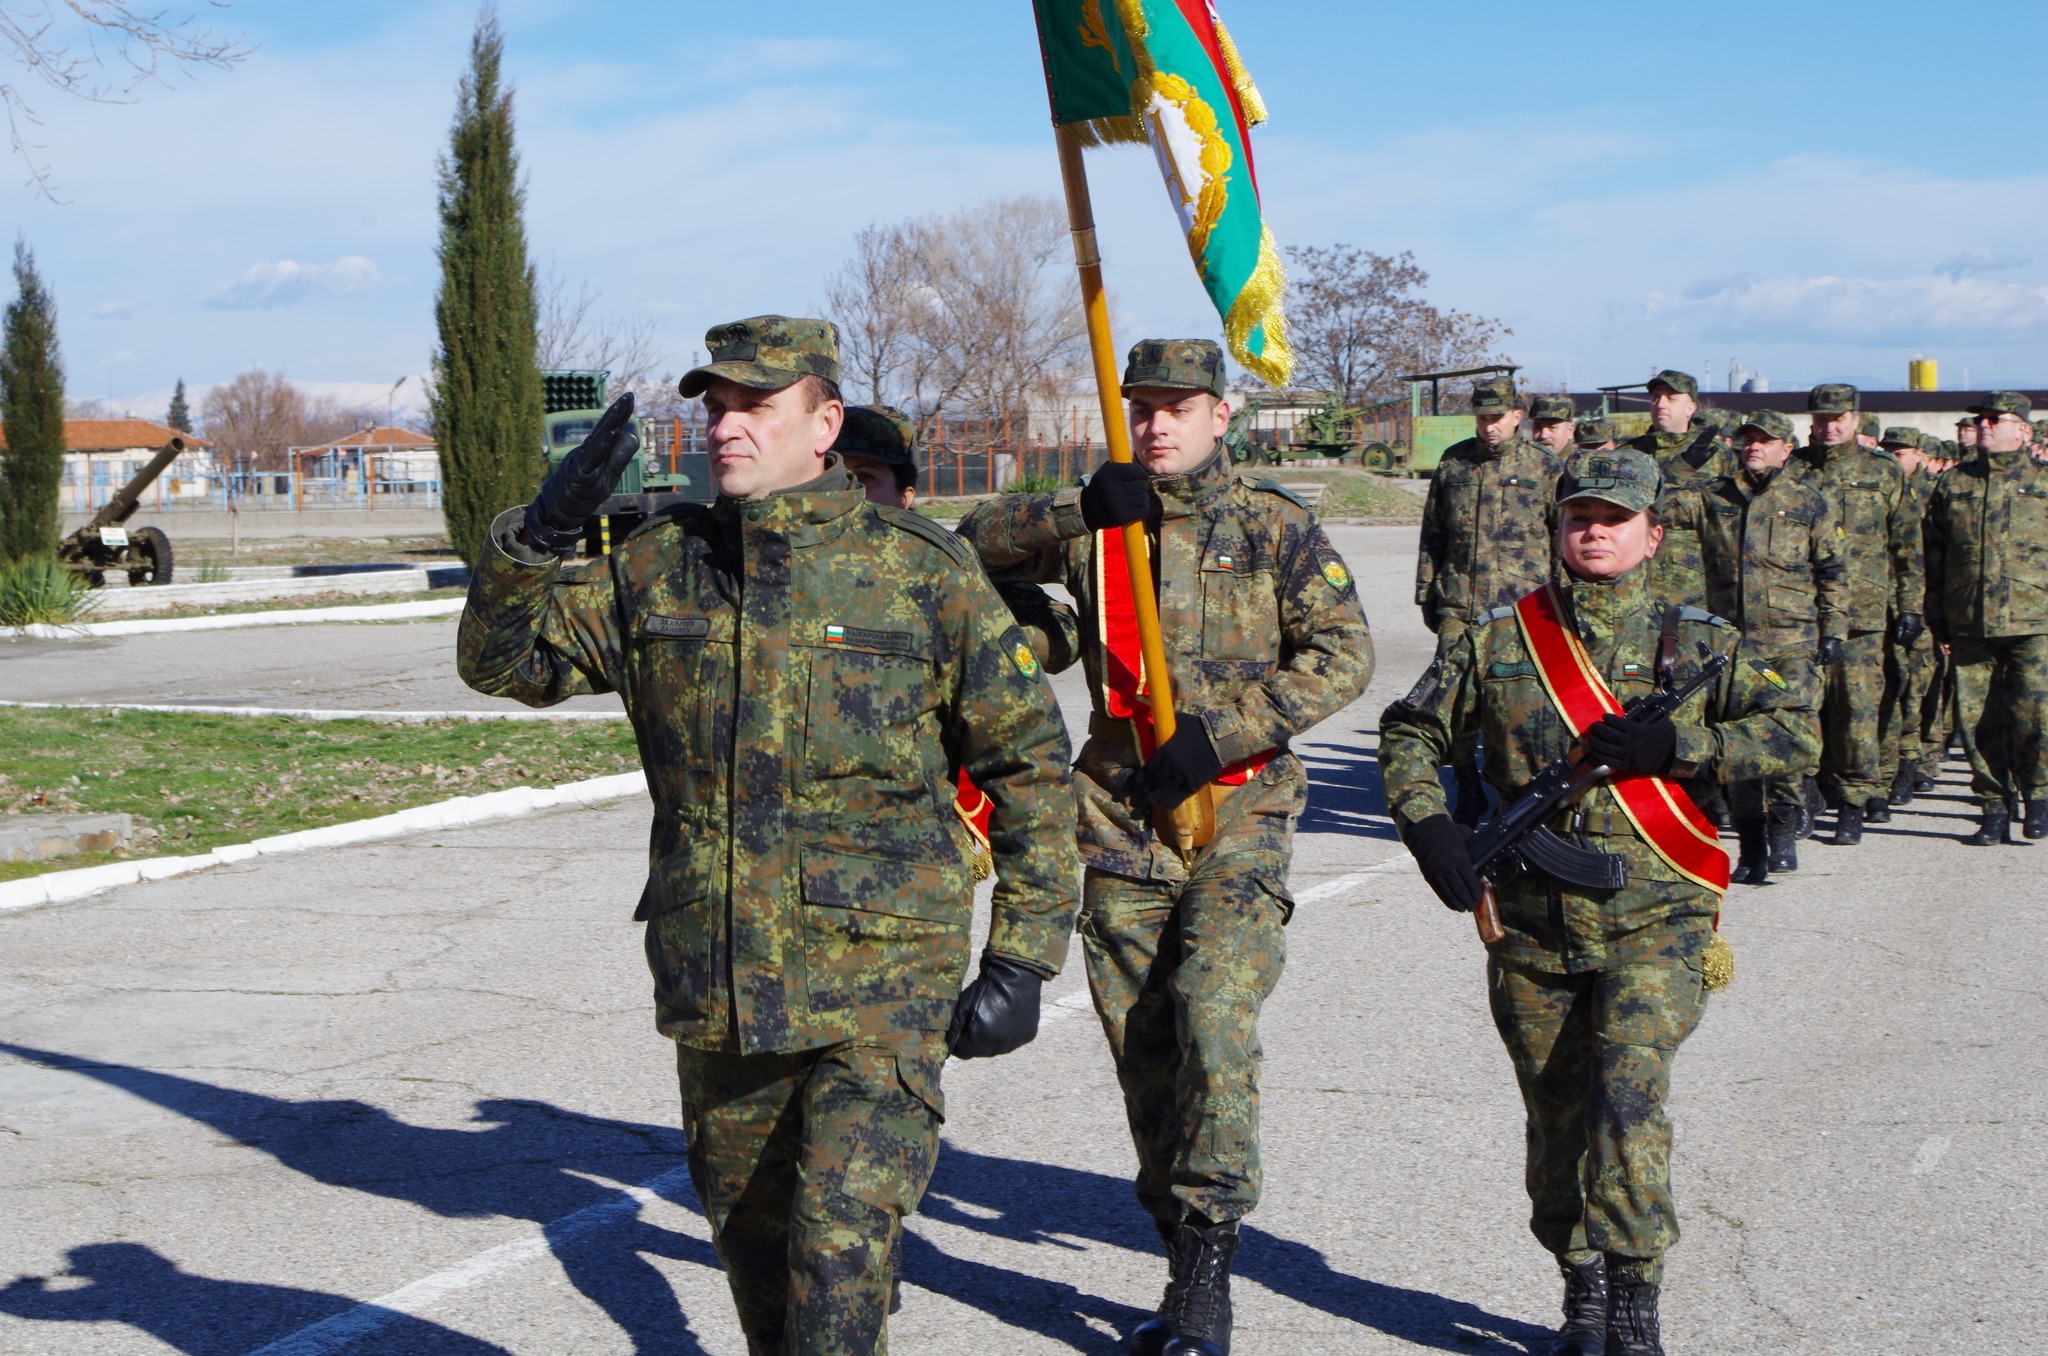 Провеждане на ритуали в Четвърти артилерийски полк - Асеновград по преминаване на военнослужещ в запаса, назначаване на военнослужещи на длъжност и повишаване във военно звание